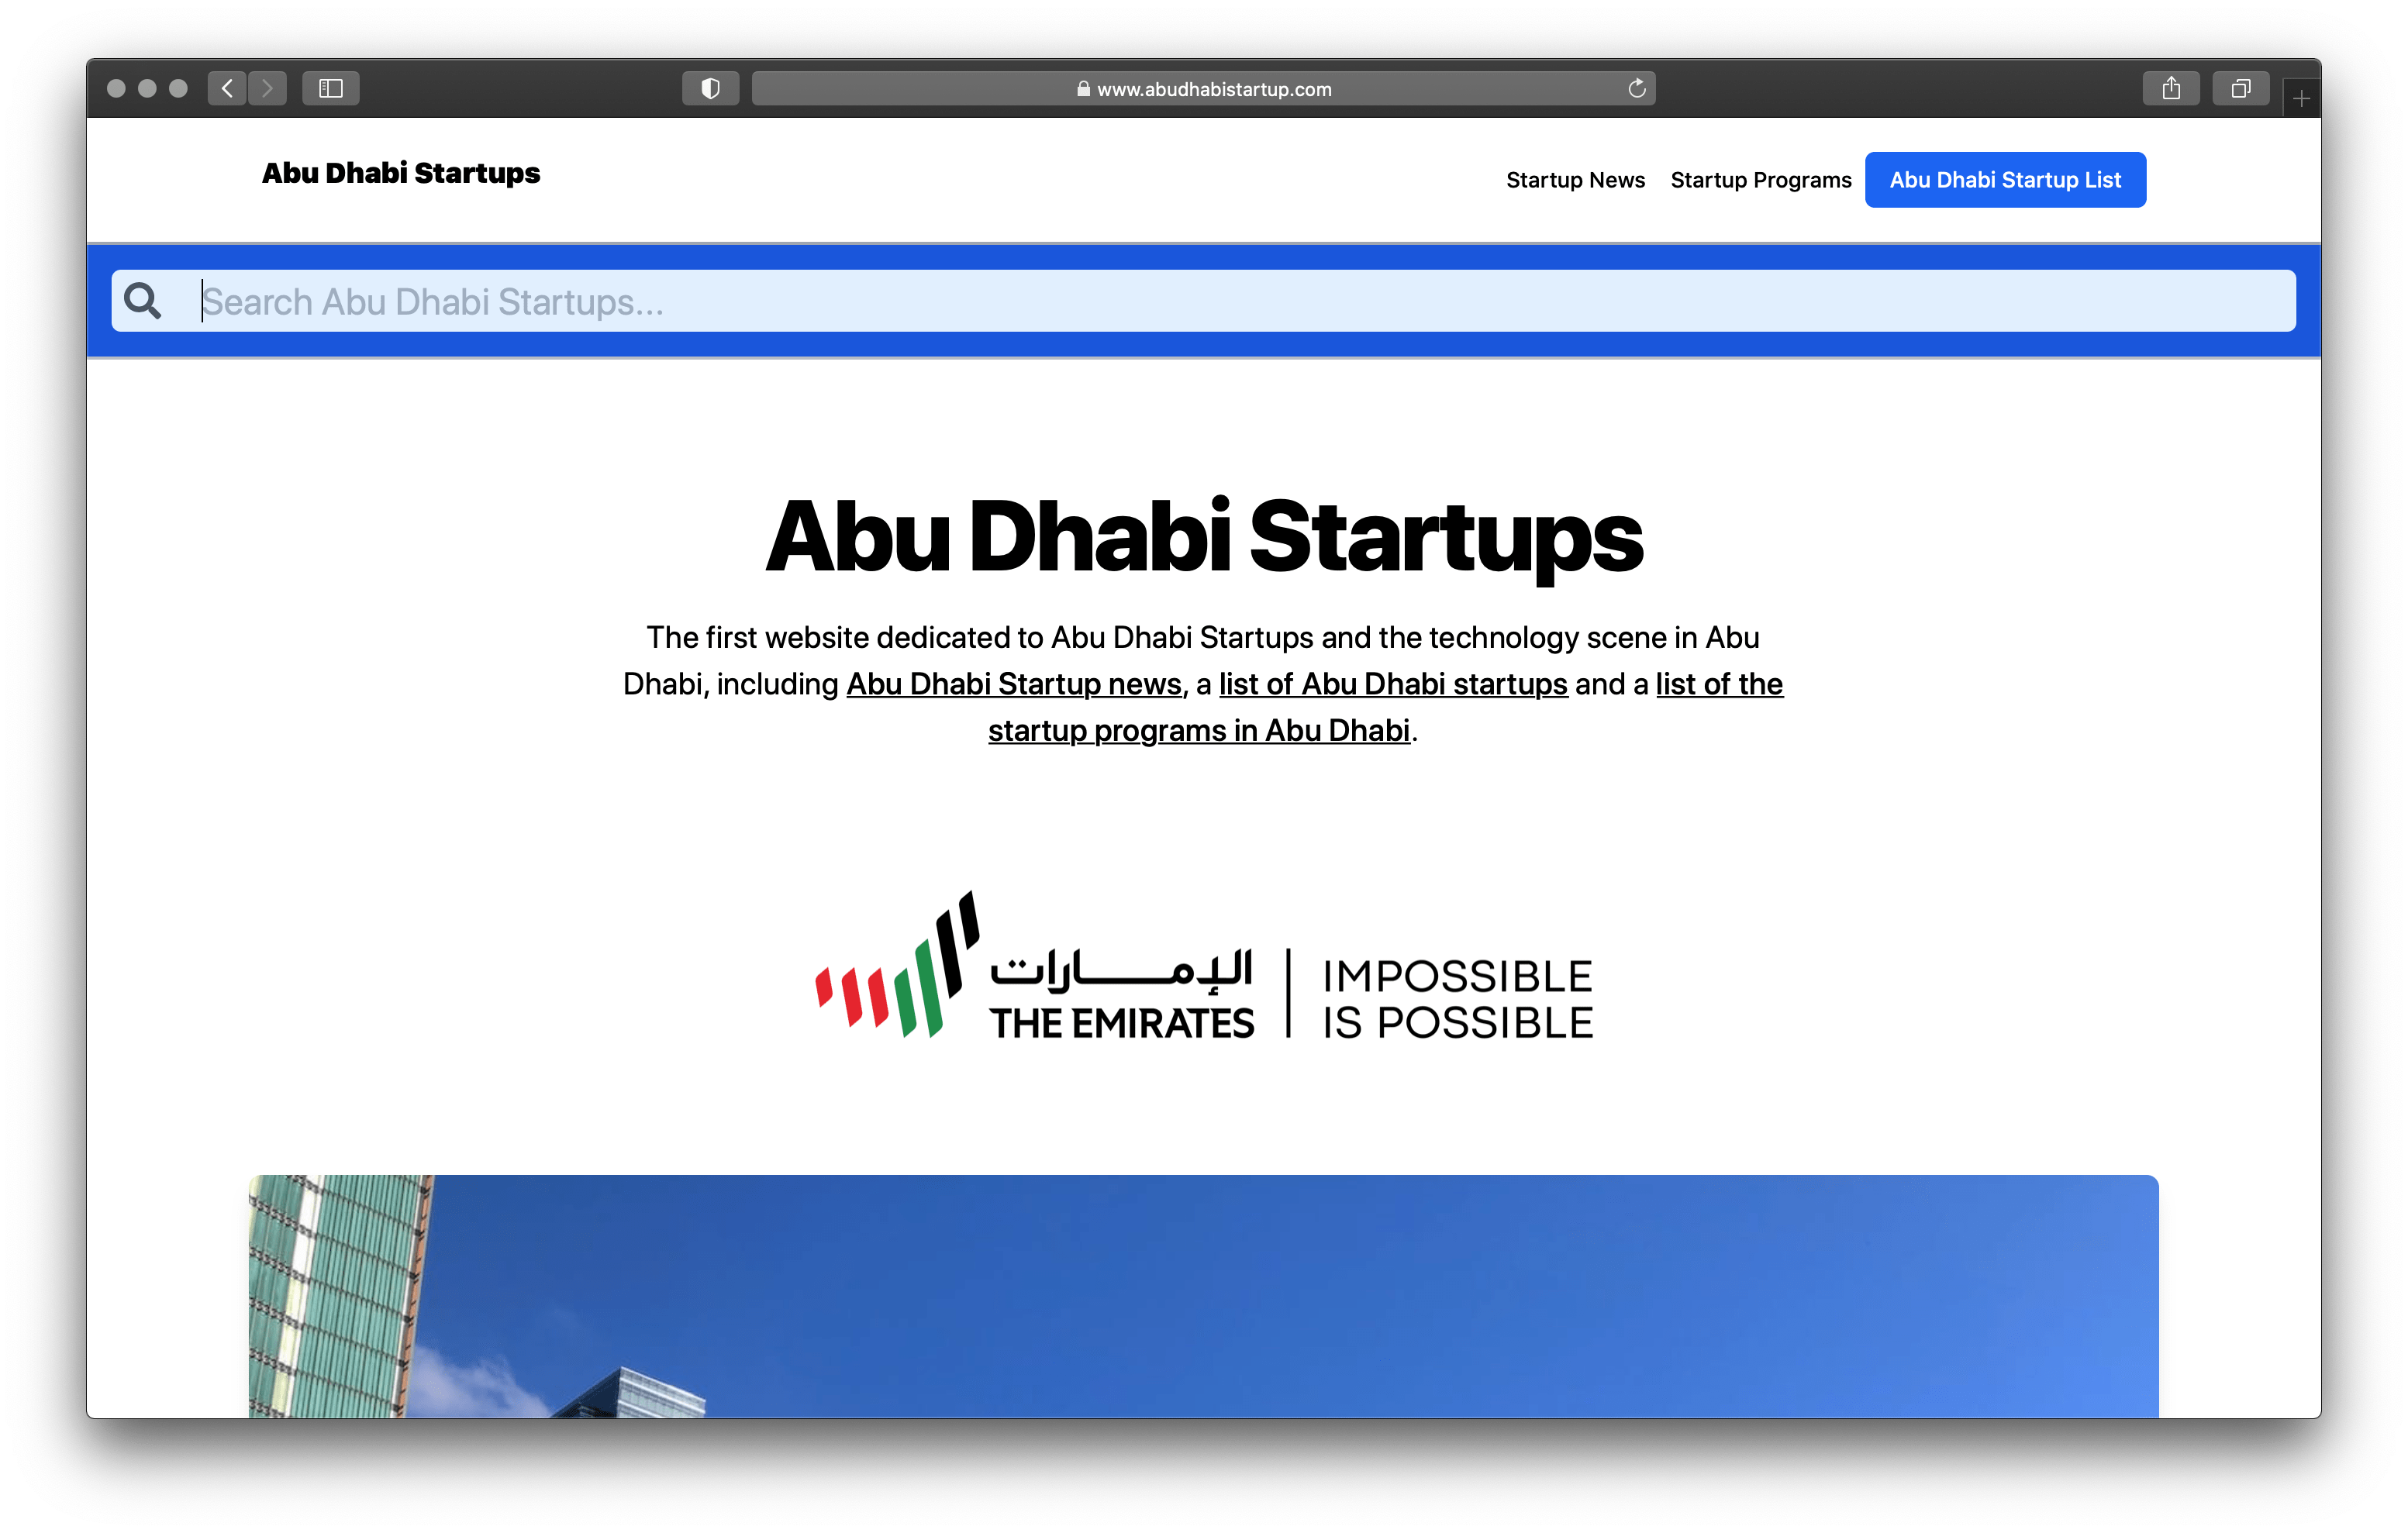 AbuDhabiStartup.com